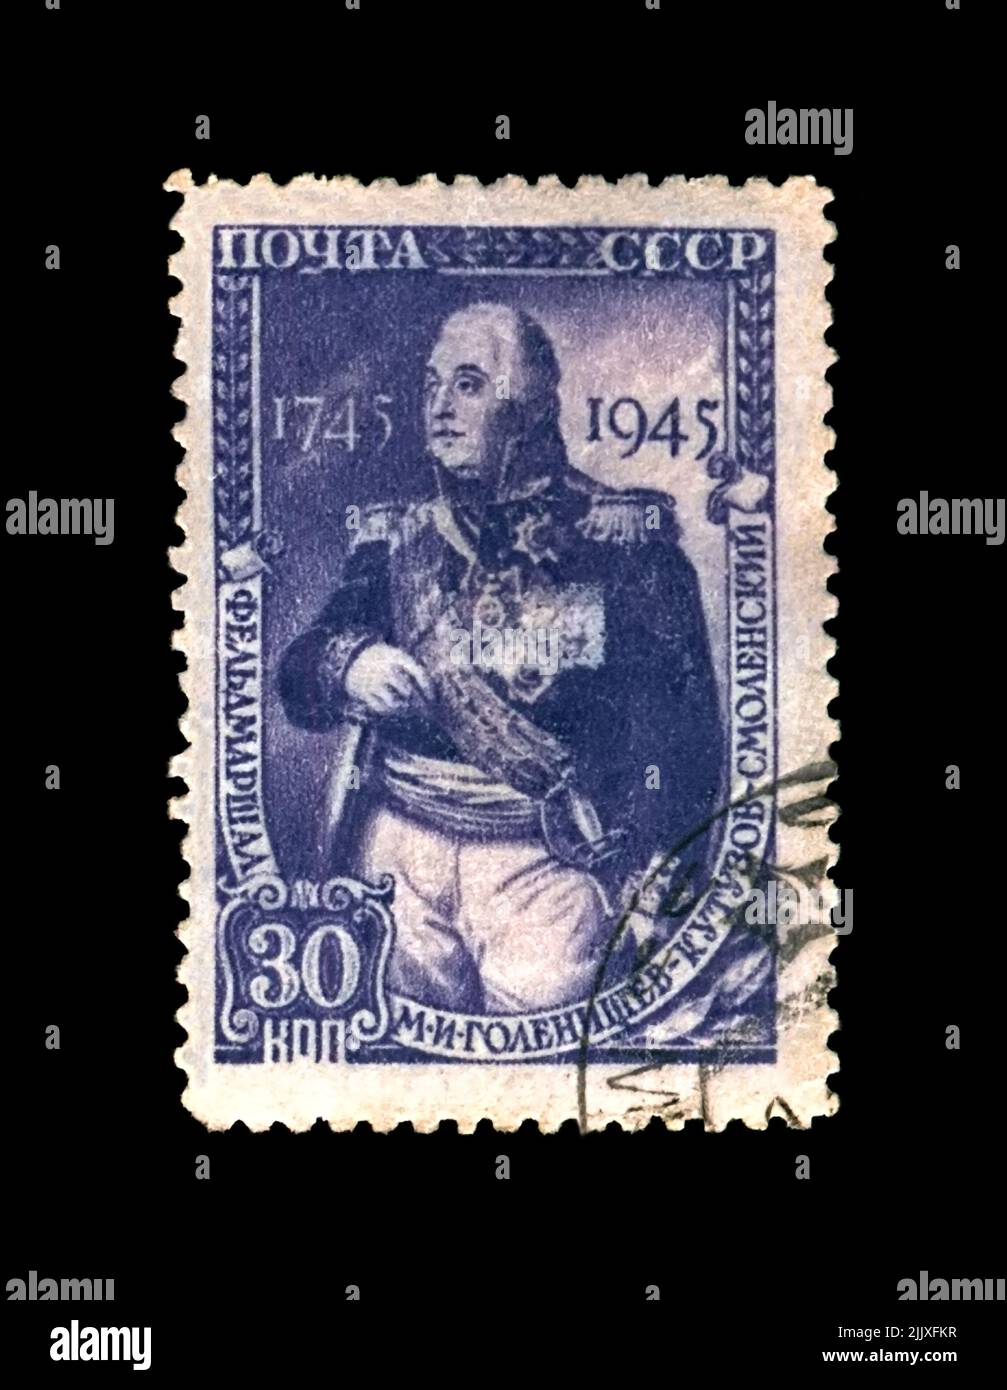 Mikhail Kutuzov (1745-1813), principe del maresciallo di campo, famoso comandante militare russo, circa 1945. Francobollo postale cancellato stampato in URSS Foto Stock